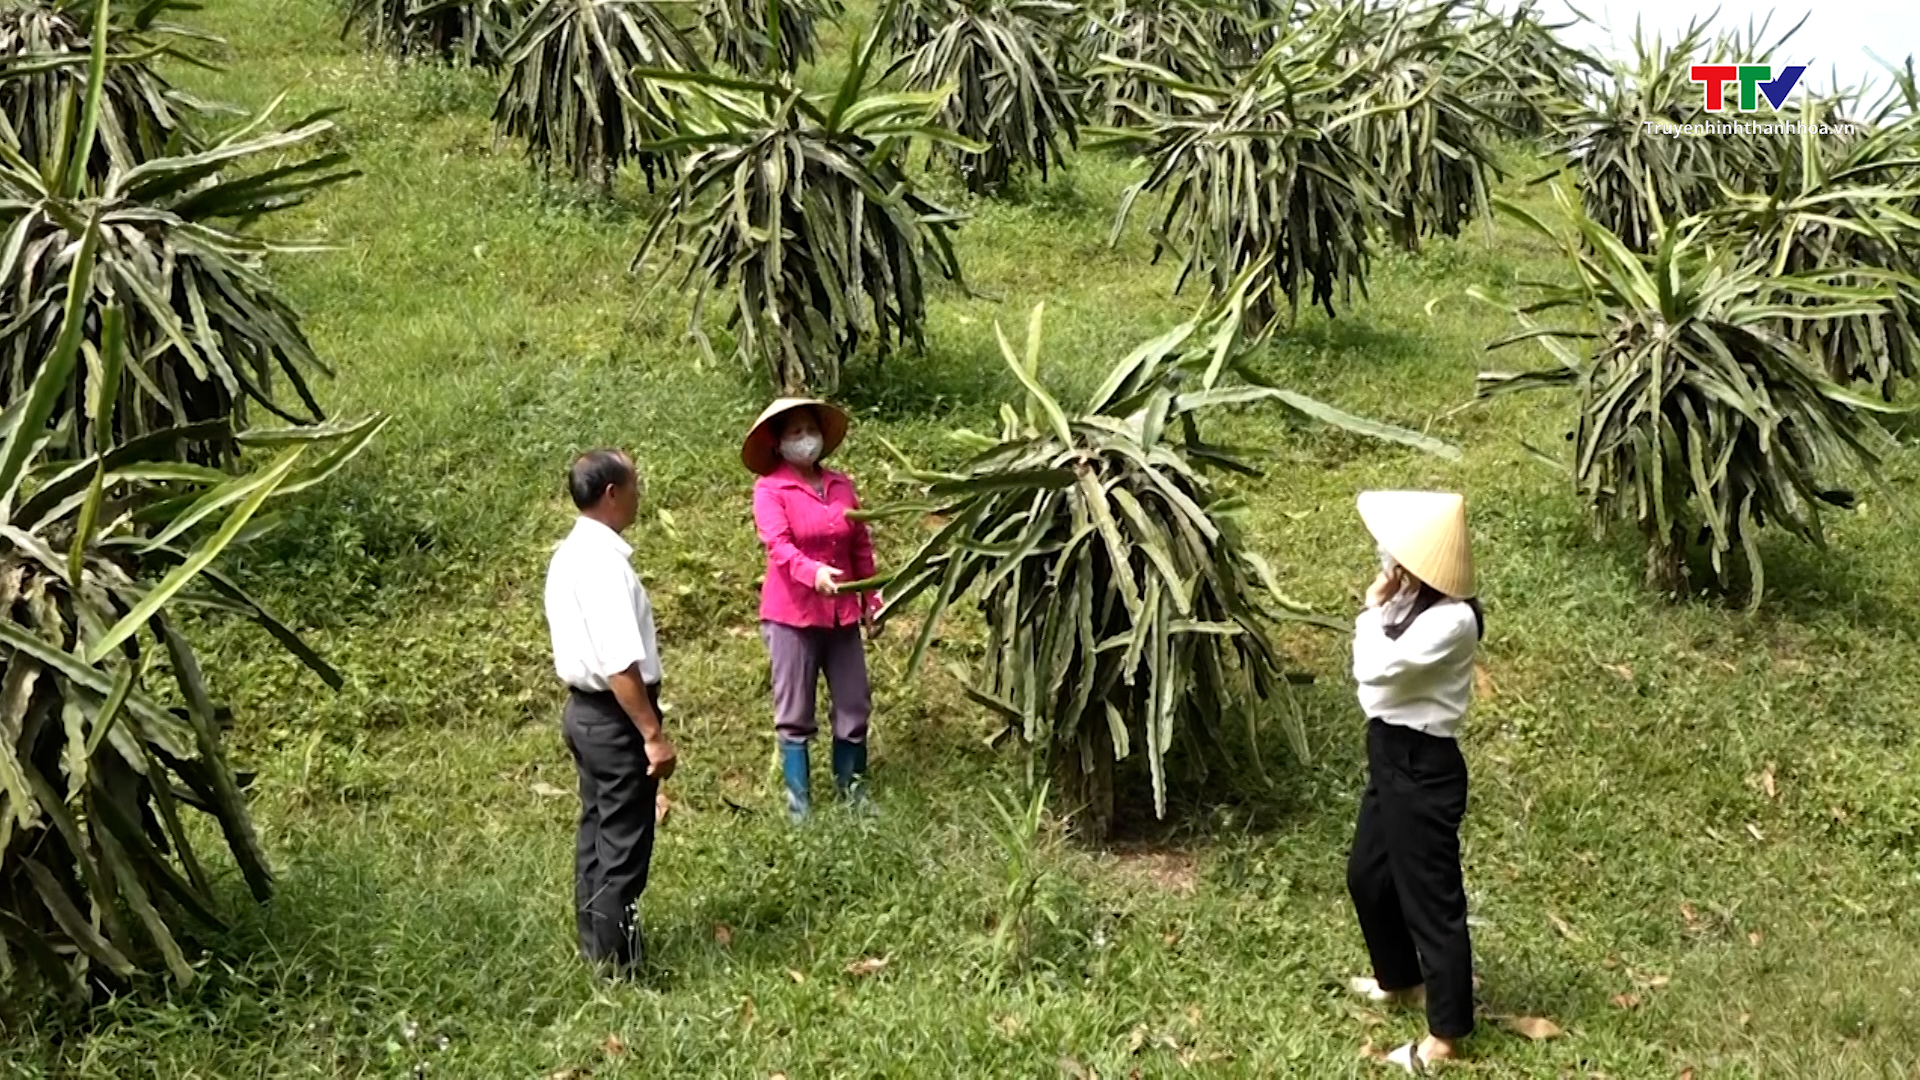 Hội nông dân xã Bình Lương giúp hội viên phát triển kinh tế - Ảnh 2.